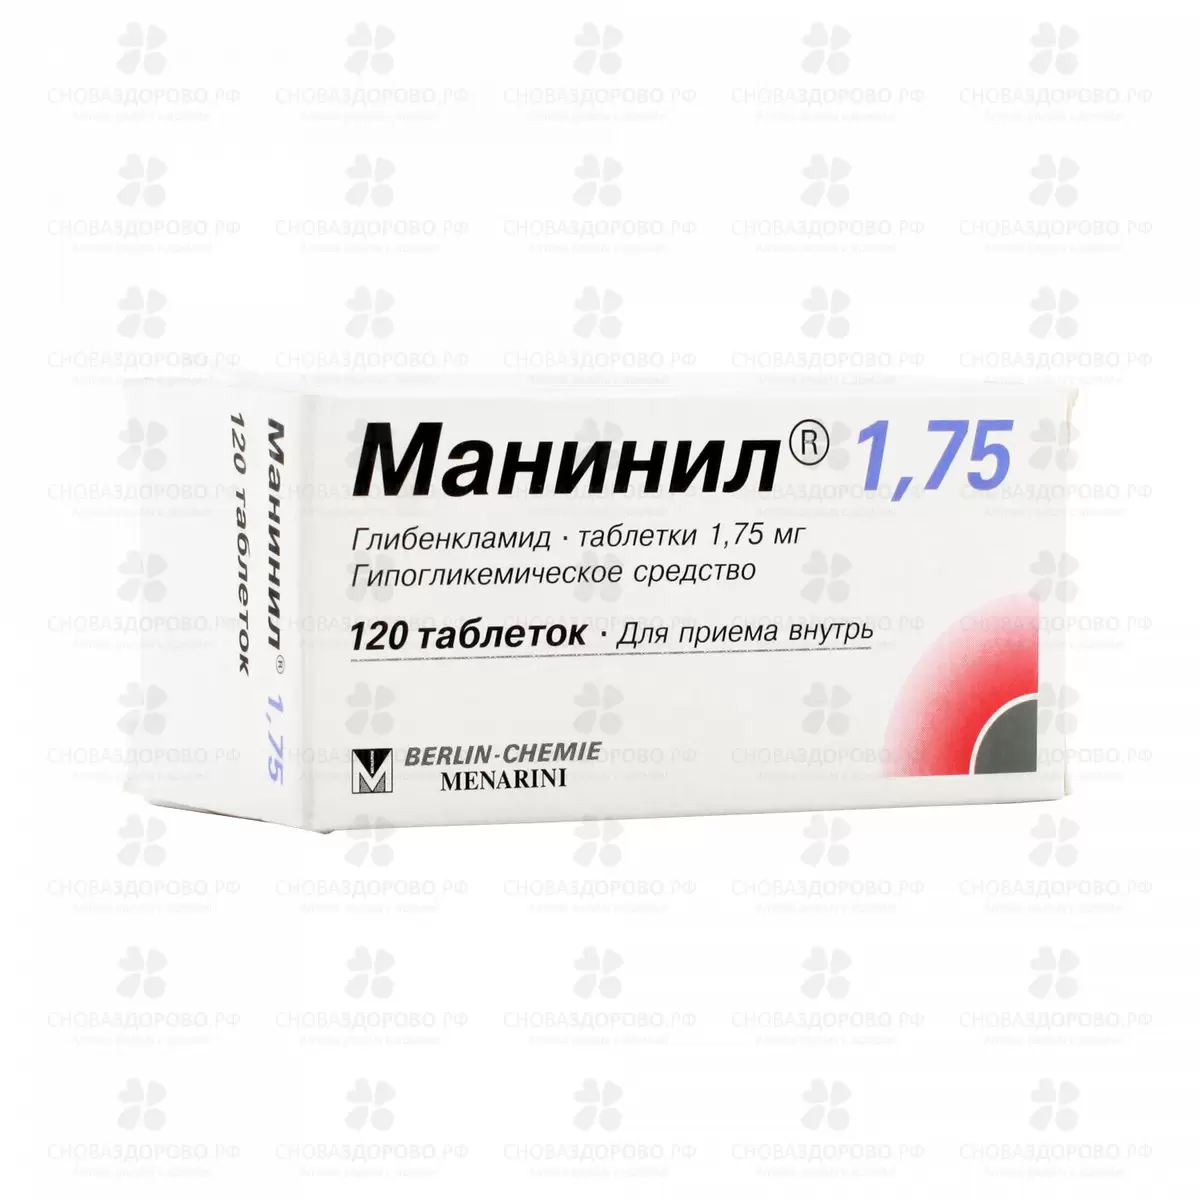 Манинил 1,75 таблетки 1,75 мг №120 ✅ 01529/06076 | Сноваздорово.рф